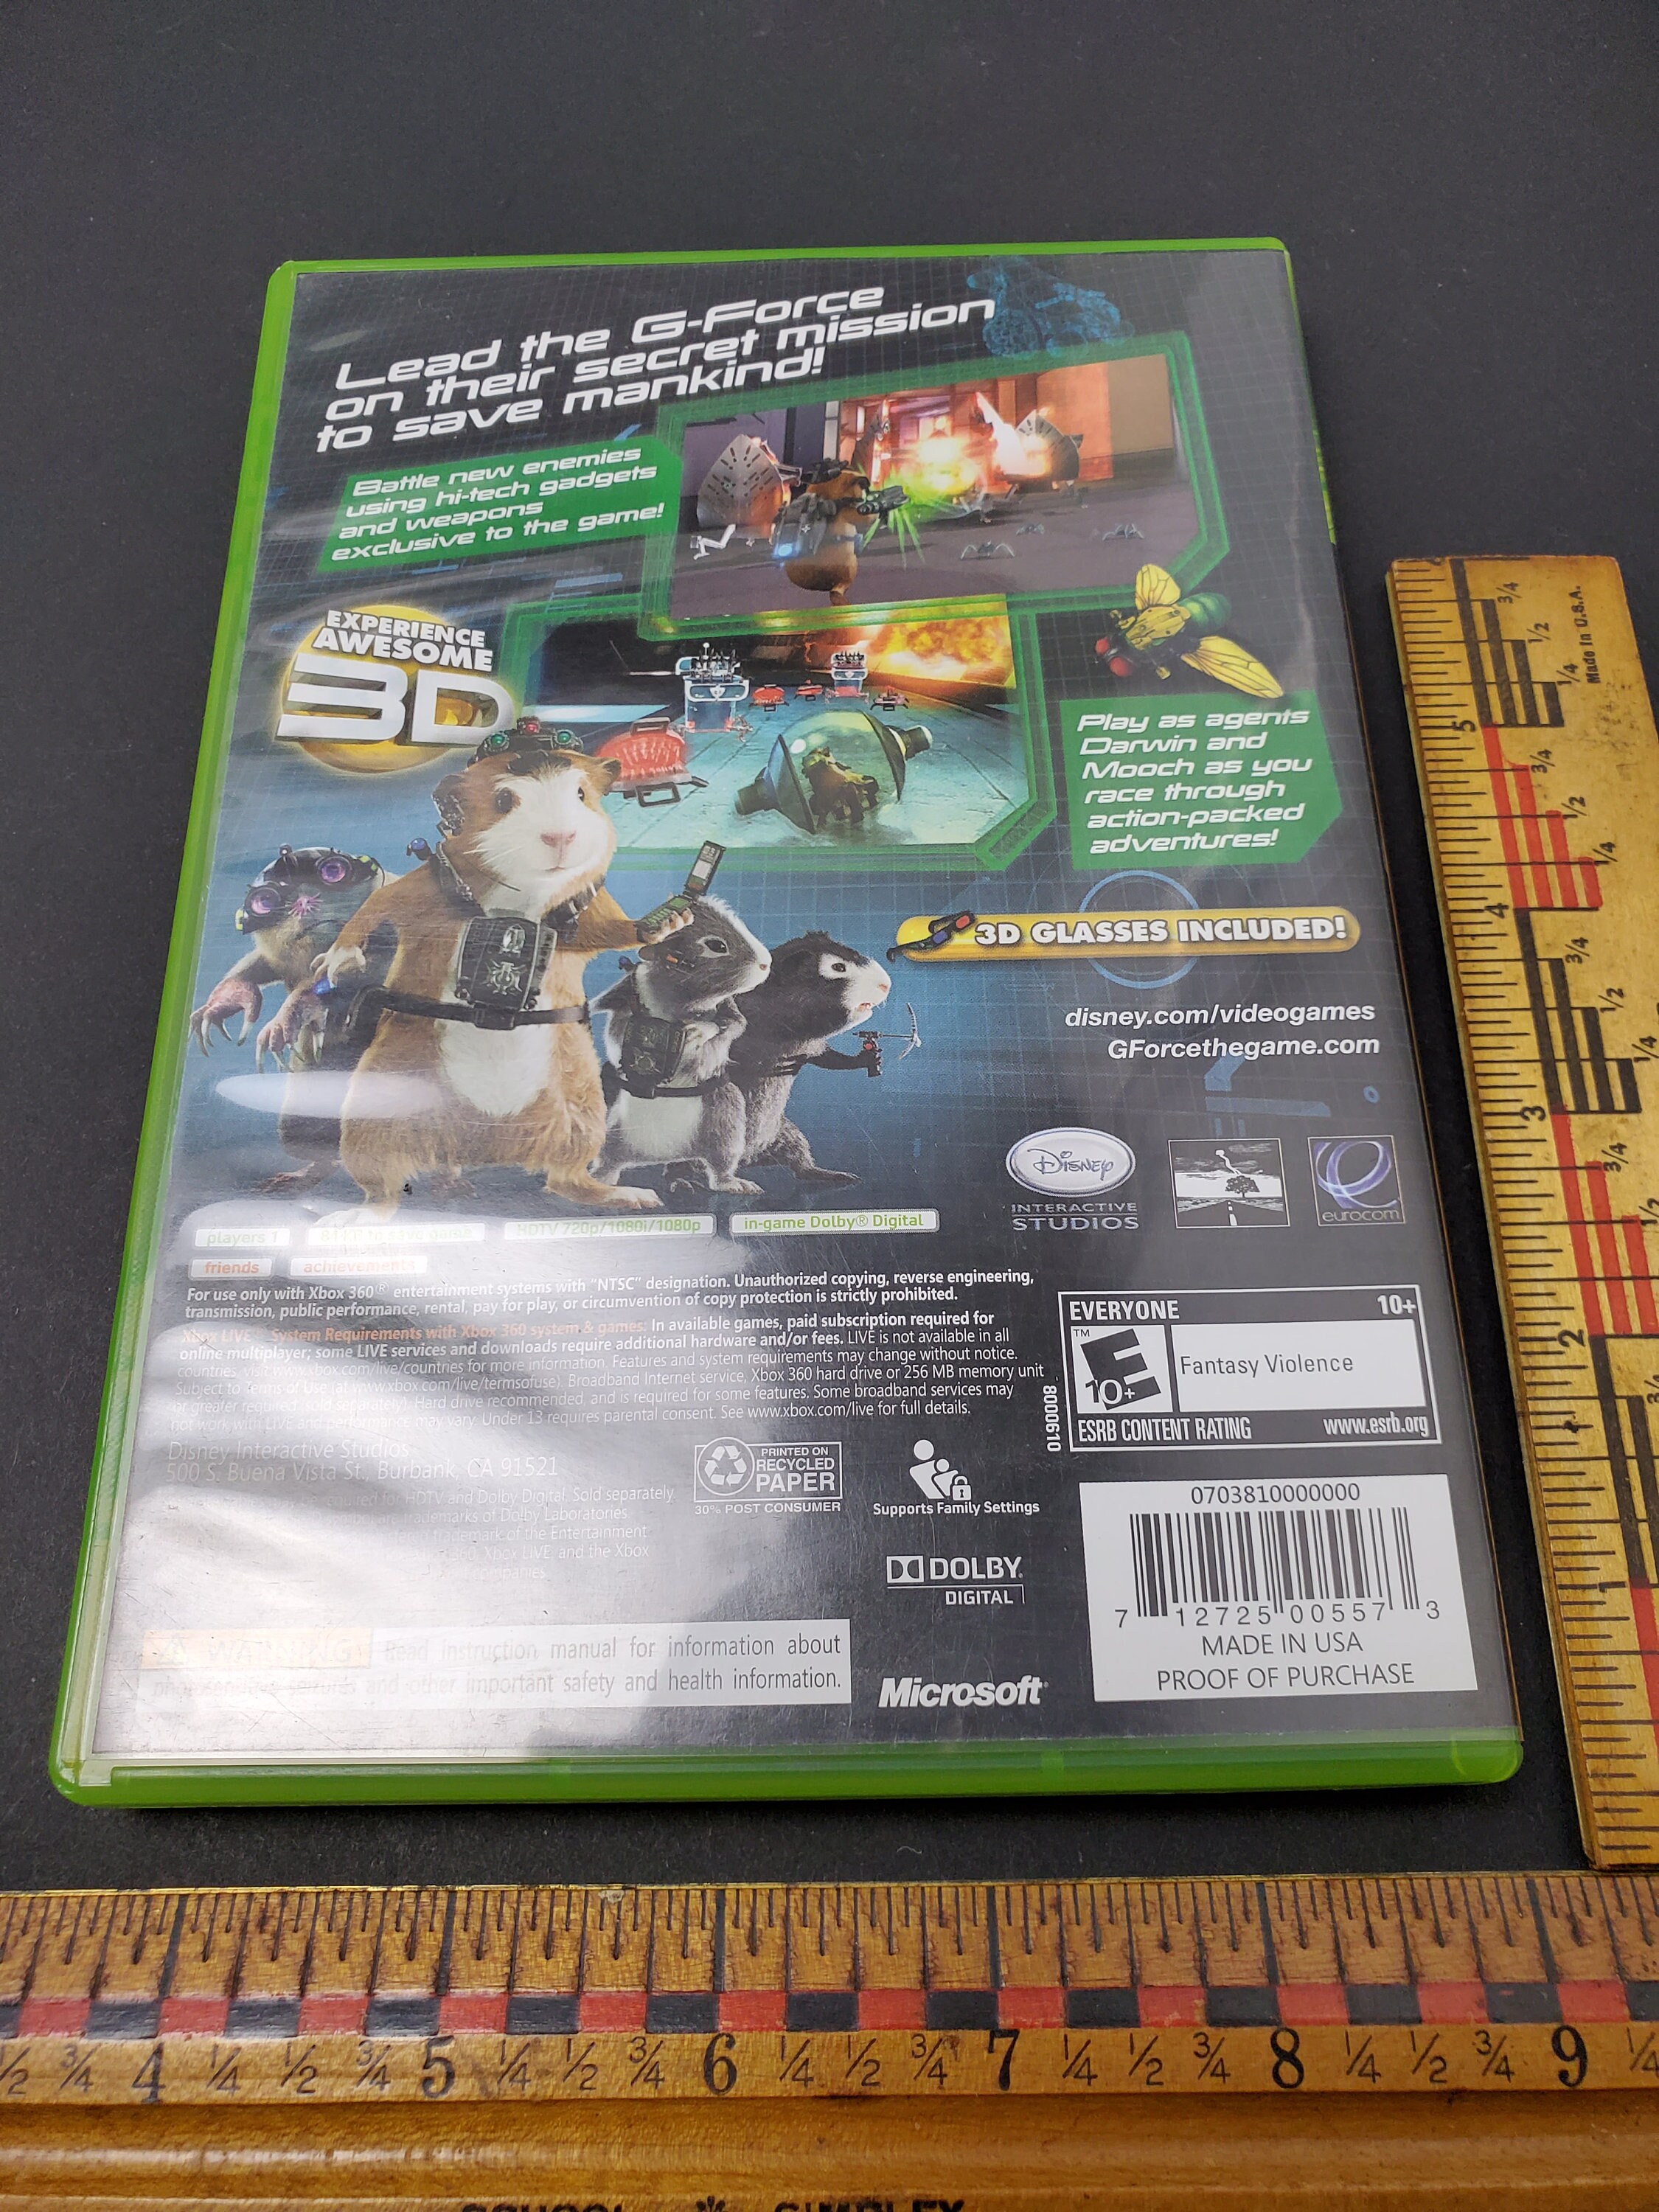 Jogo Mídia Física Disney G-Force Original para Xbox 360 em